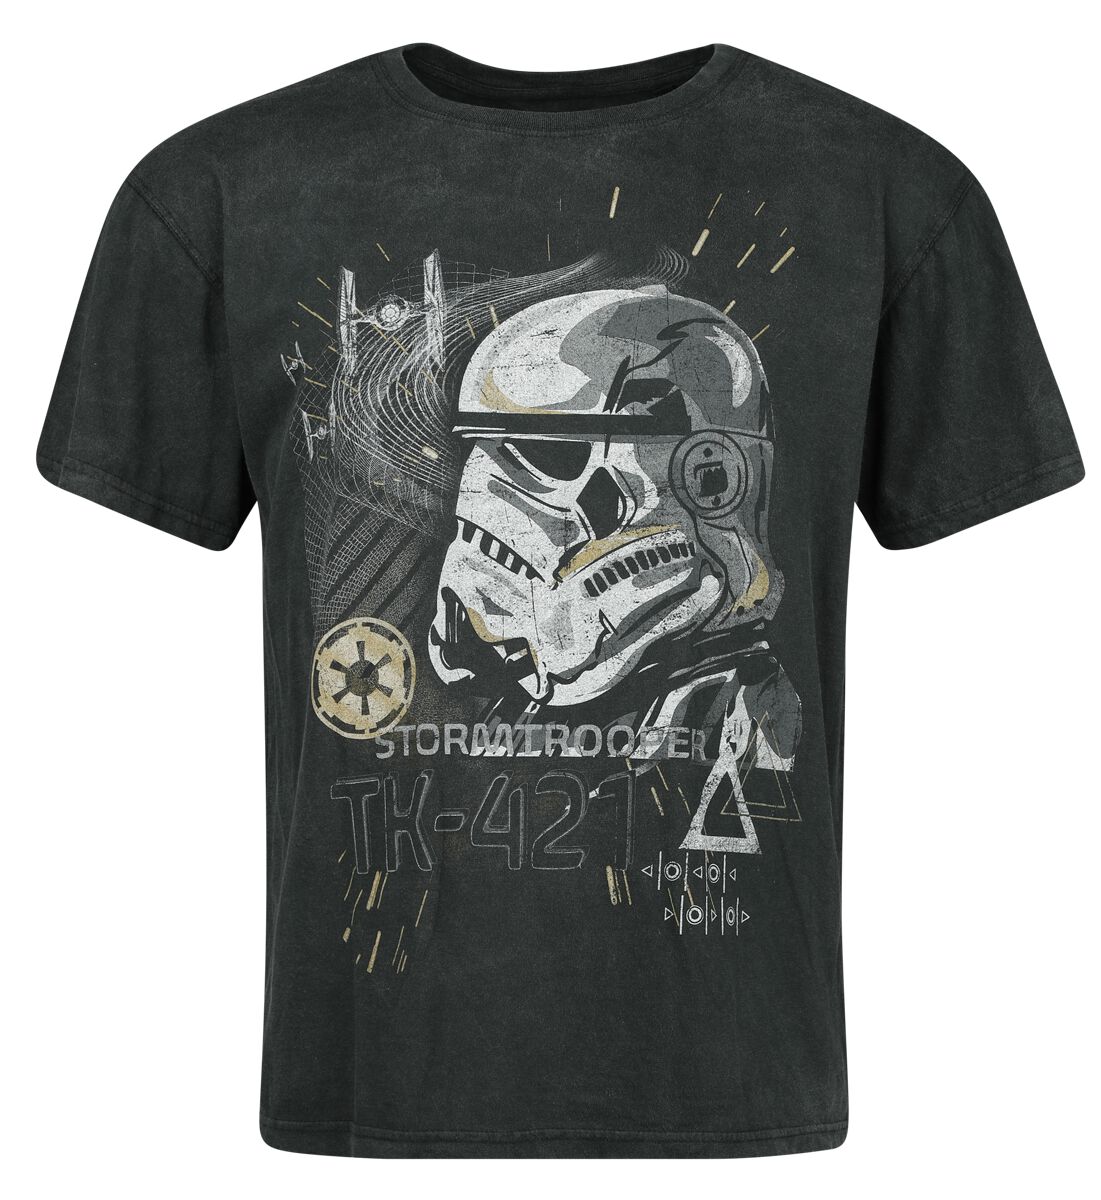 Star Wars T-Shirt - Storm Trooper - S bis 3XL - für Männer - Größe 3XL - schwarz  - EMP exklusives Merchandise!